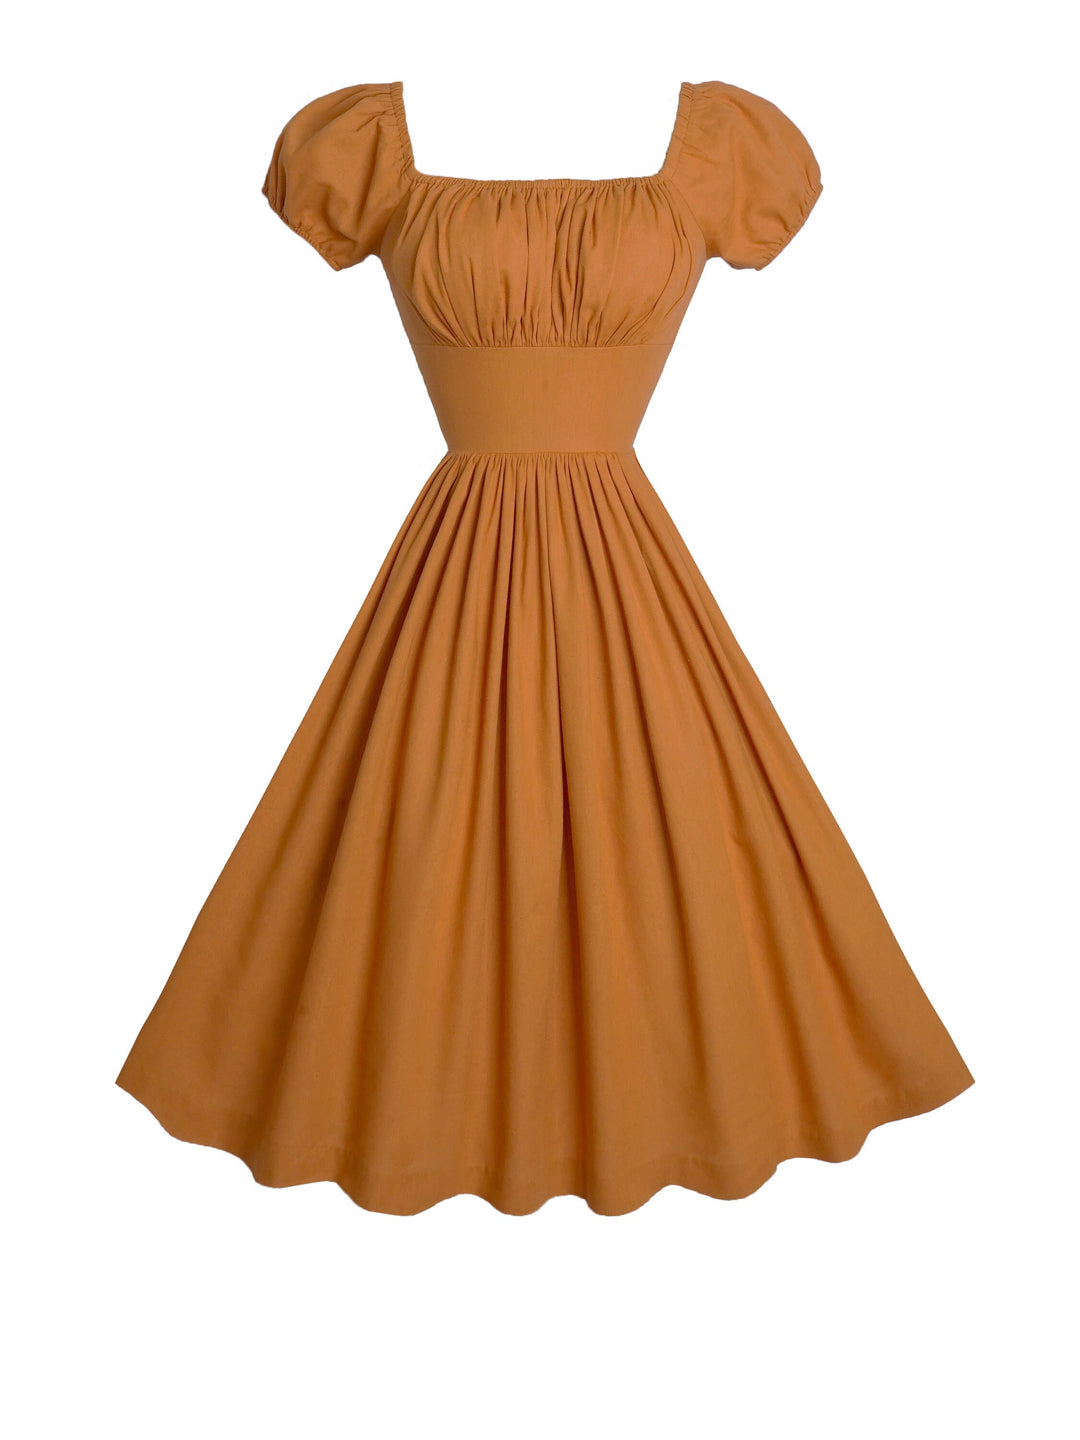 MTO - Loretta Dress in Cinnamon Brown Linen